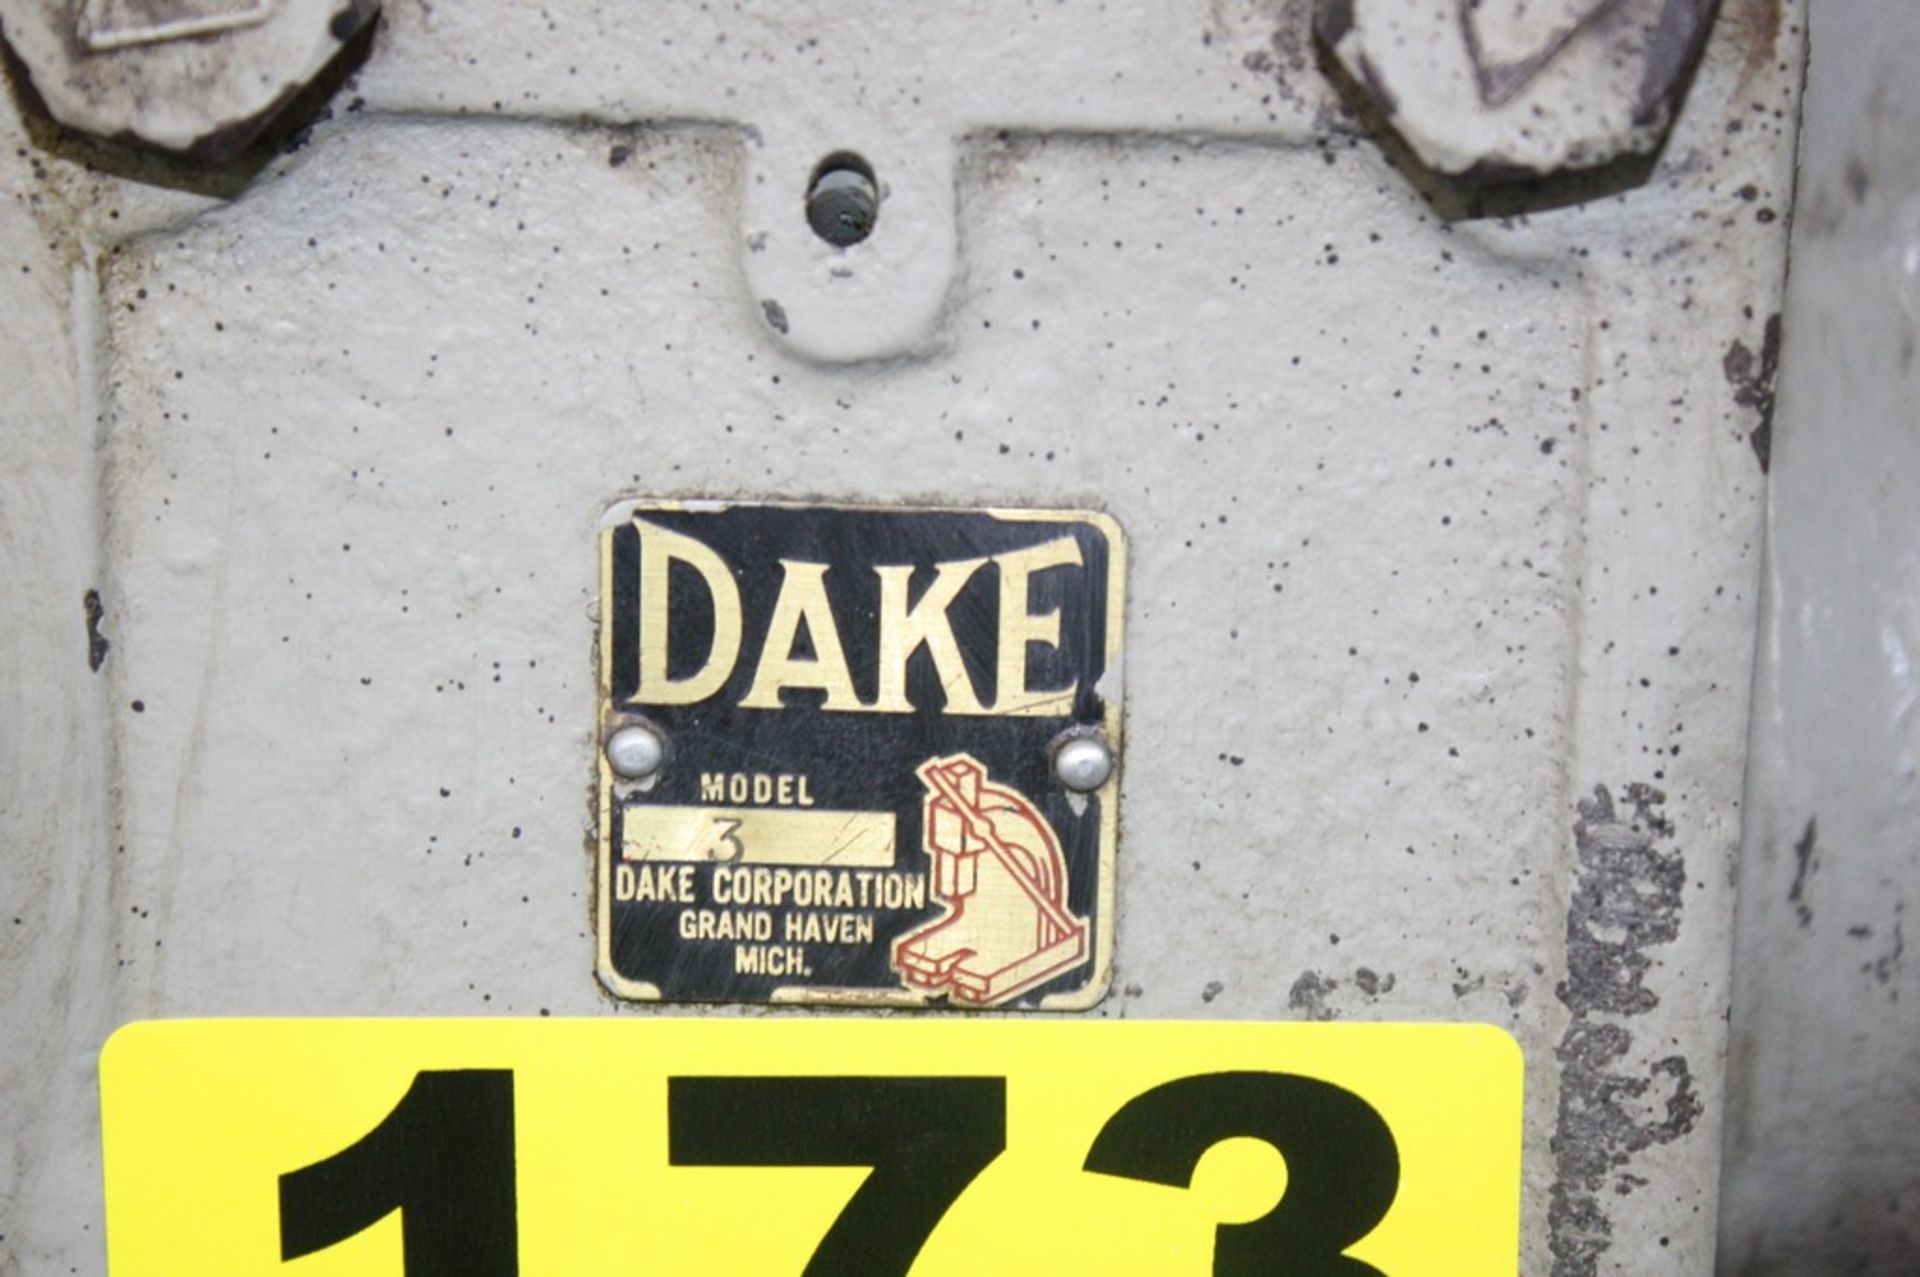 DAKE MODEL 3 ARBOR PRESS - Image 5 of 5